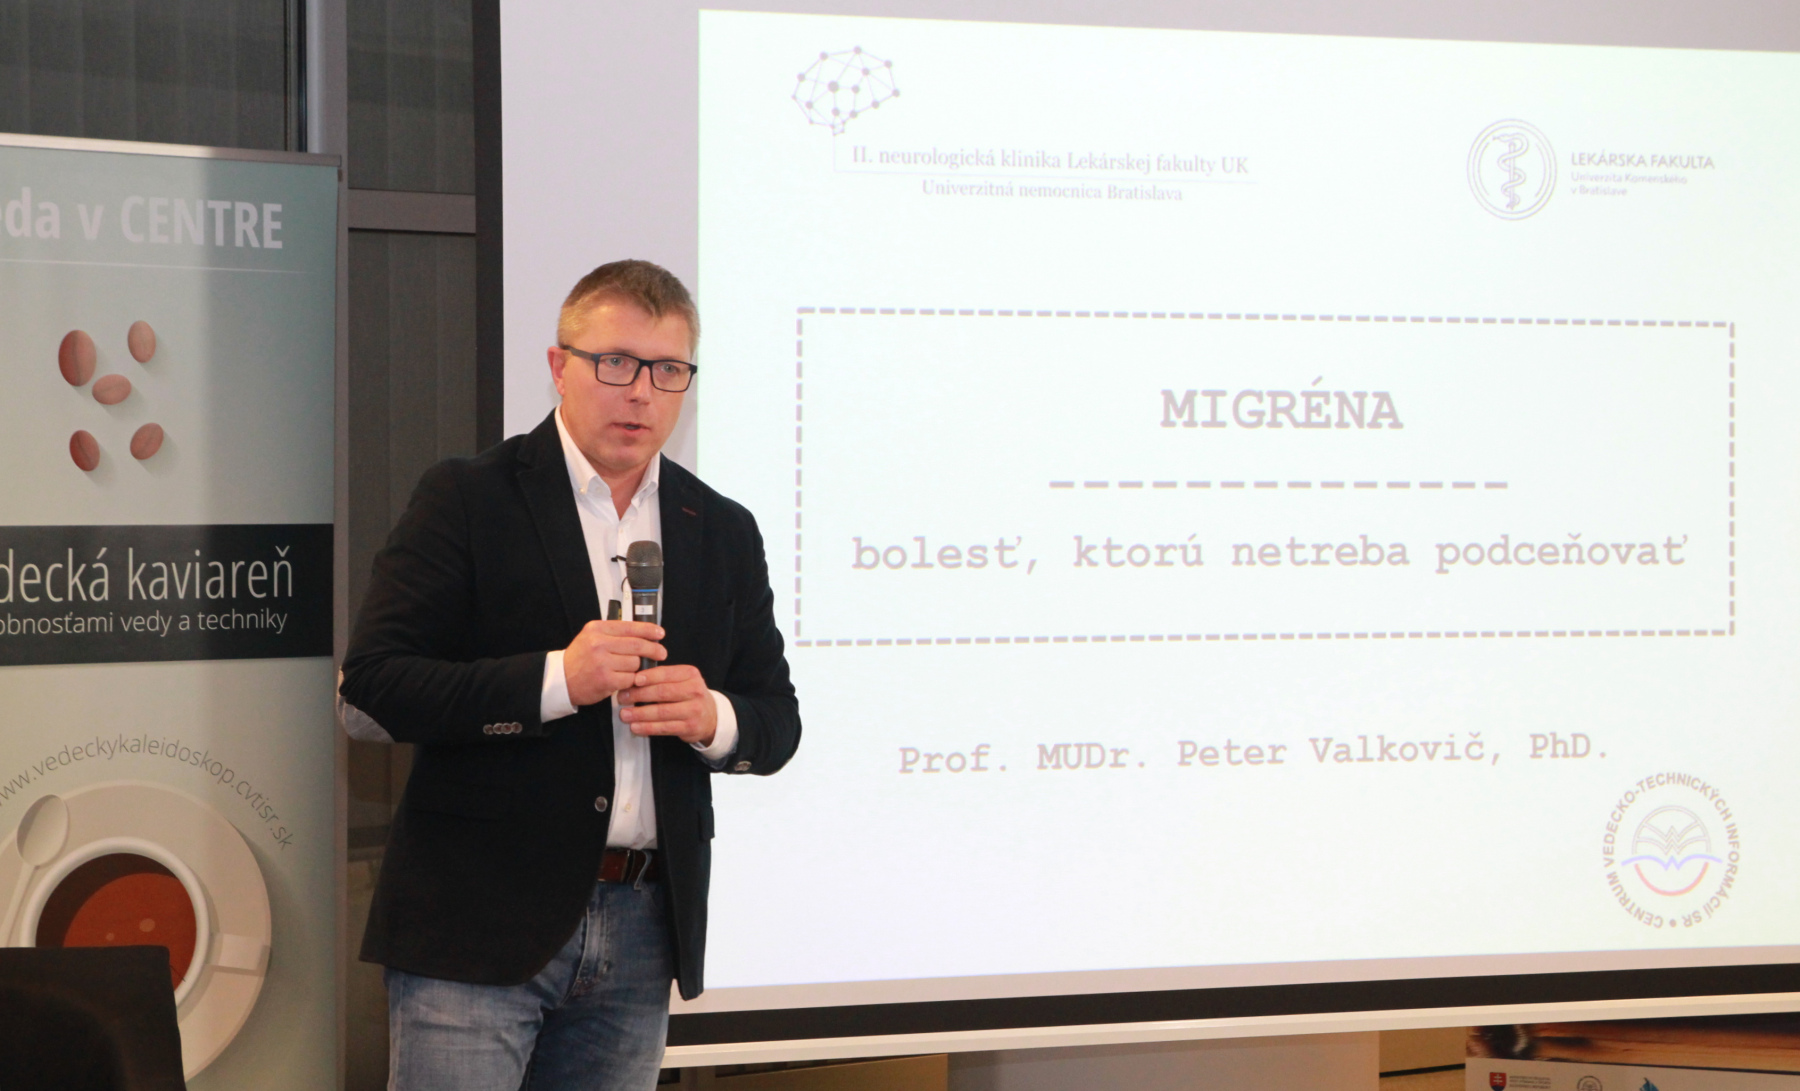 Migréna – bolesť, ktorú netreba podceňovať – Prof. MUDr. Peter Valkovič, PhD.